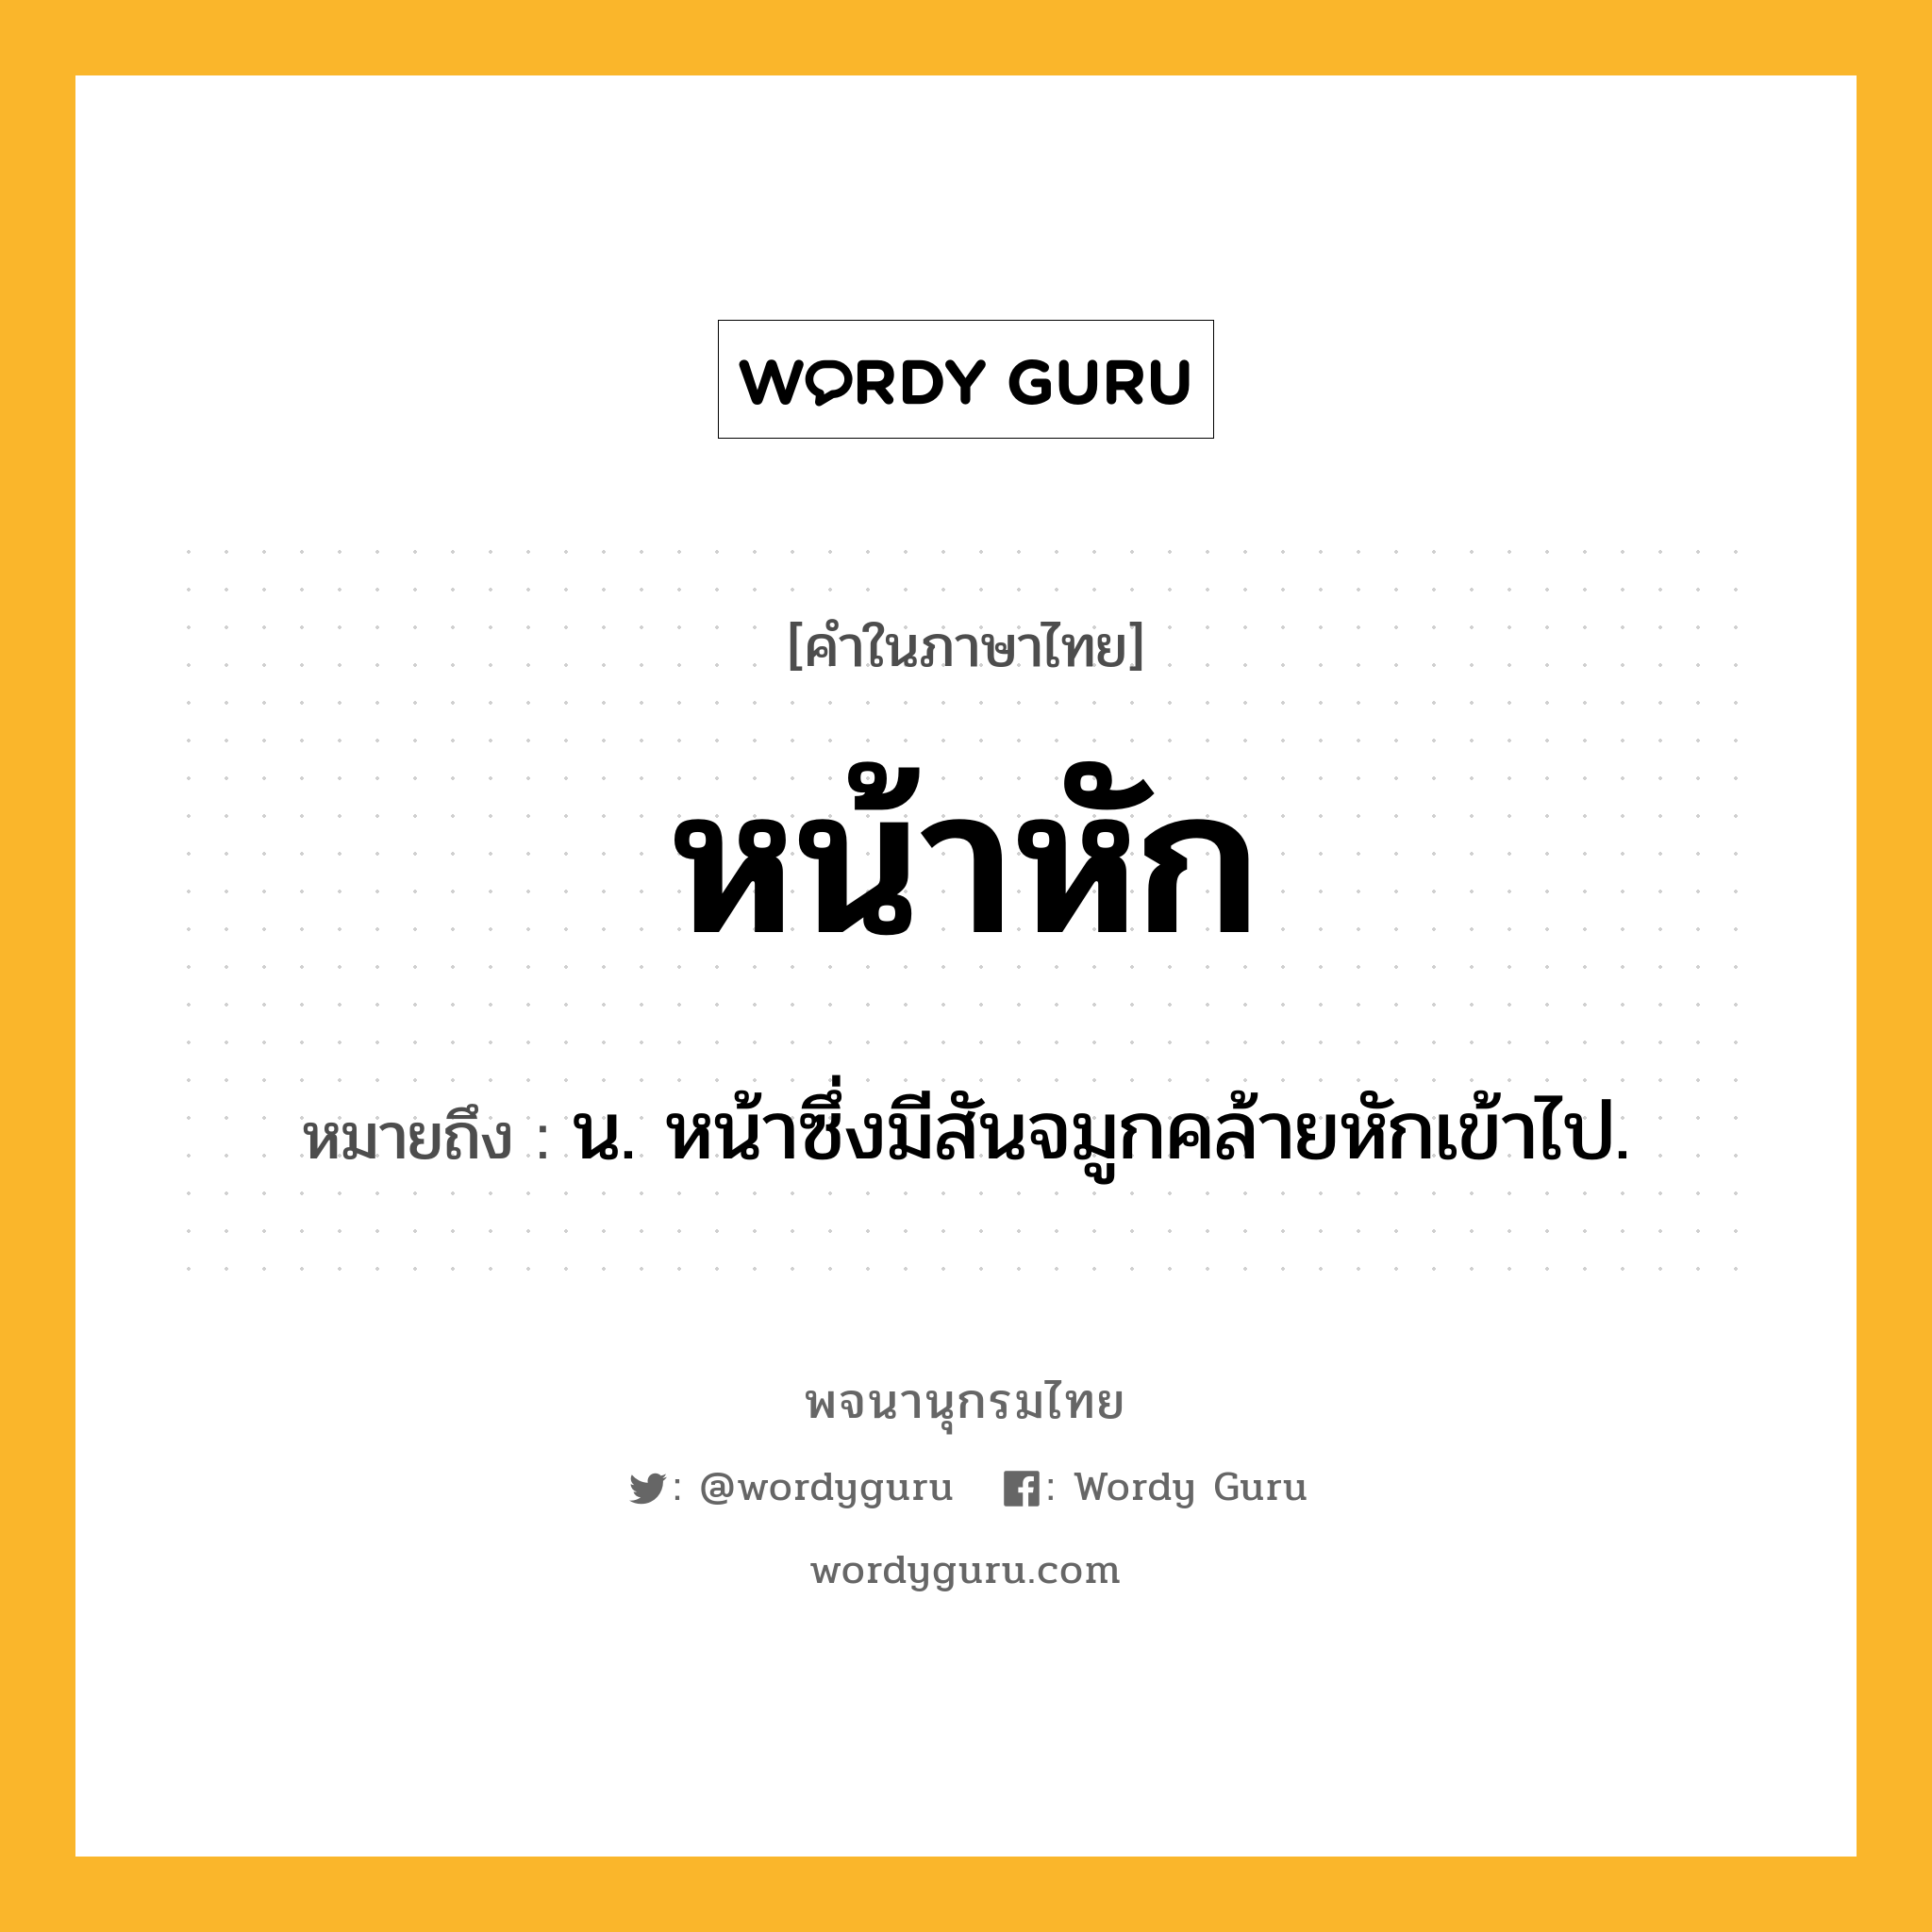 หน้าหัก หมายถึงอะไร?, คำในภาษาไทย หน้าหัก หมายถึง น. หน้าซึ่งมีสันจมูกคล้ายหักเข้าไป.